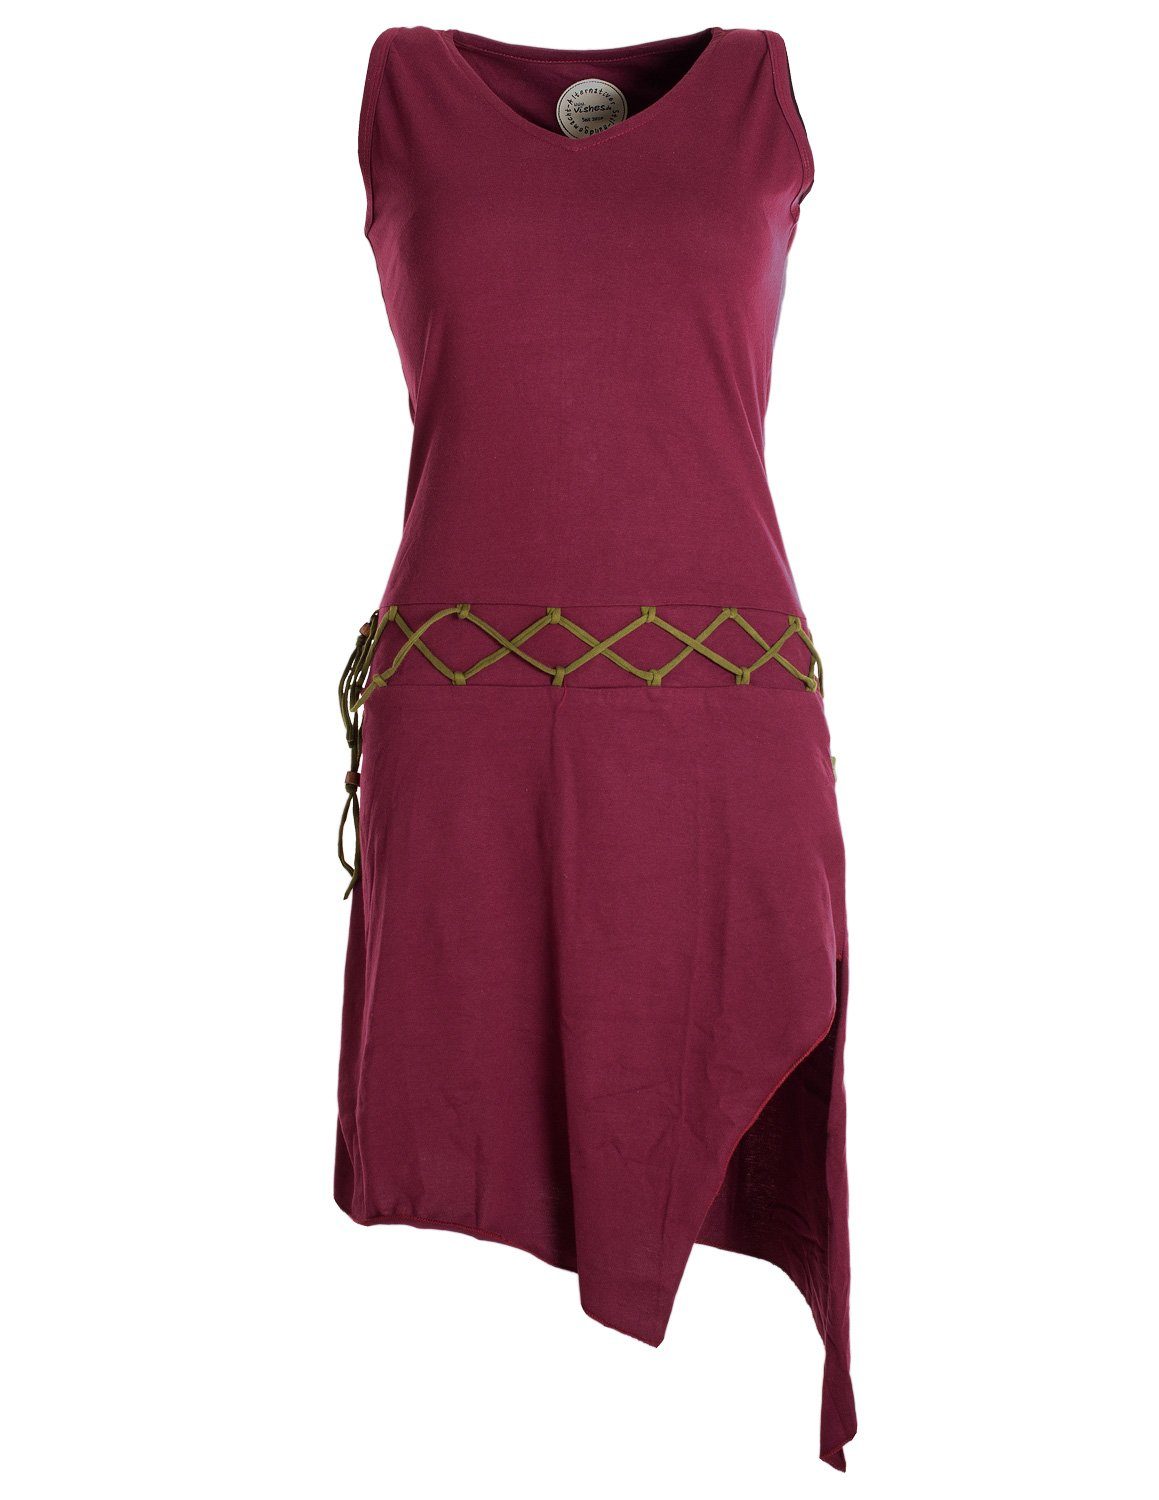 Vishes dunkelrot Hippie, Goa asymmetrisch Sommerkleid Kleid Elfen Beinausschnitt Ärmelloses Style Boho, Gürtel-Schnürung